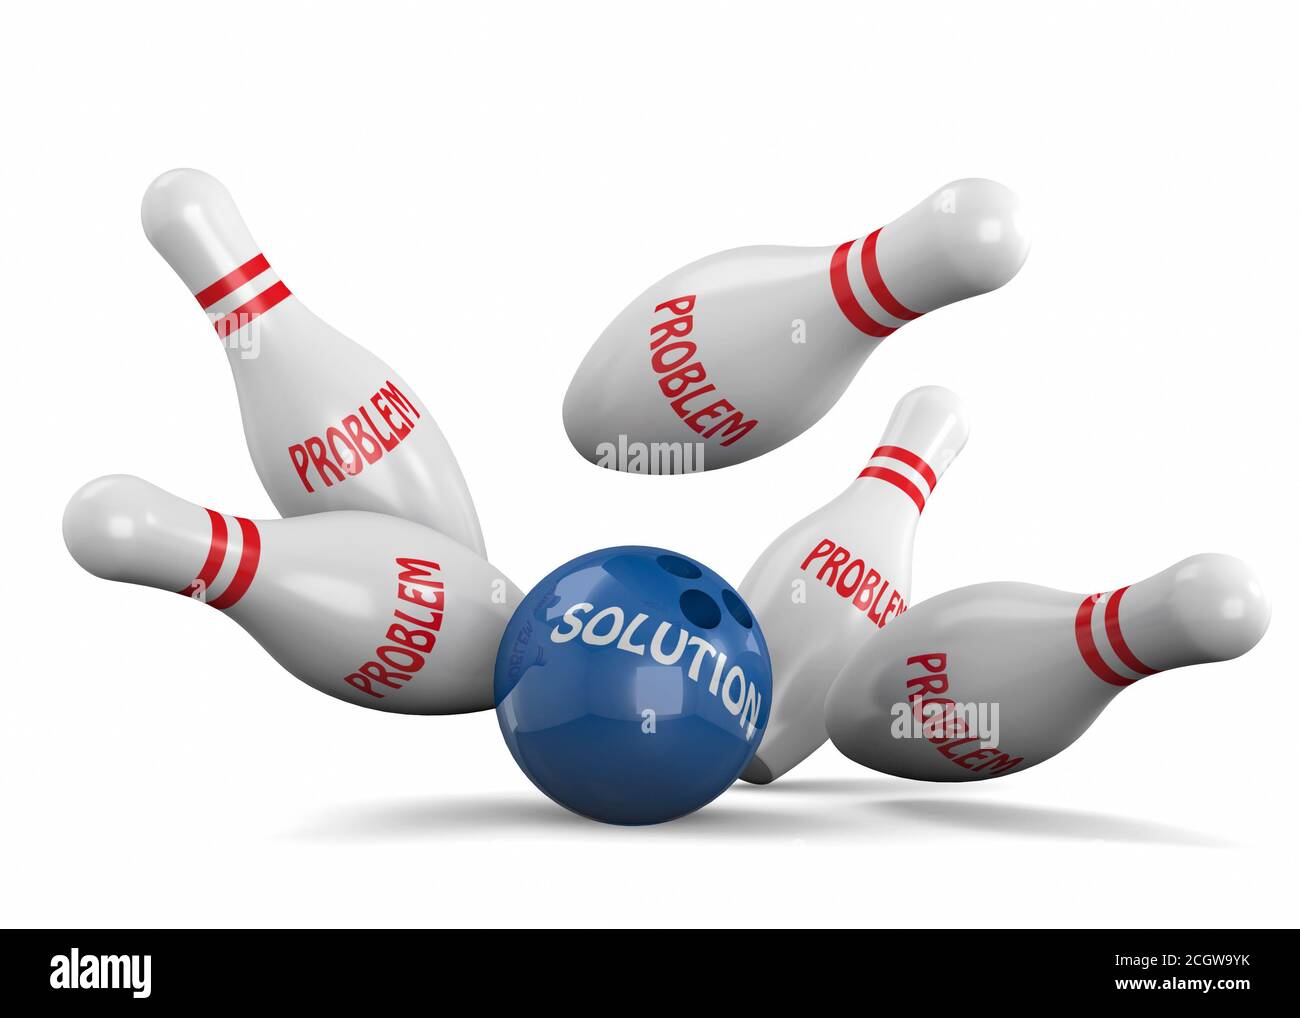 Solve the Problem Concept - 3D Stock Photo